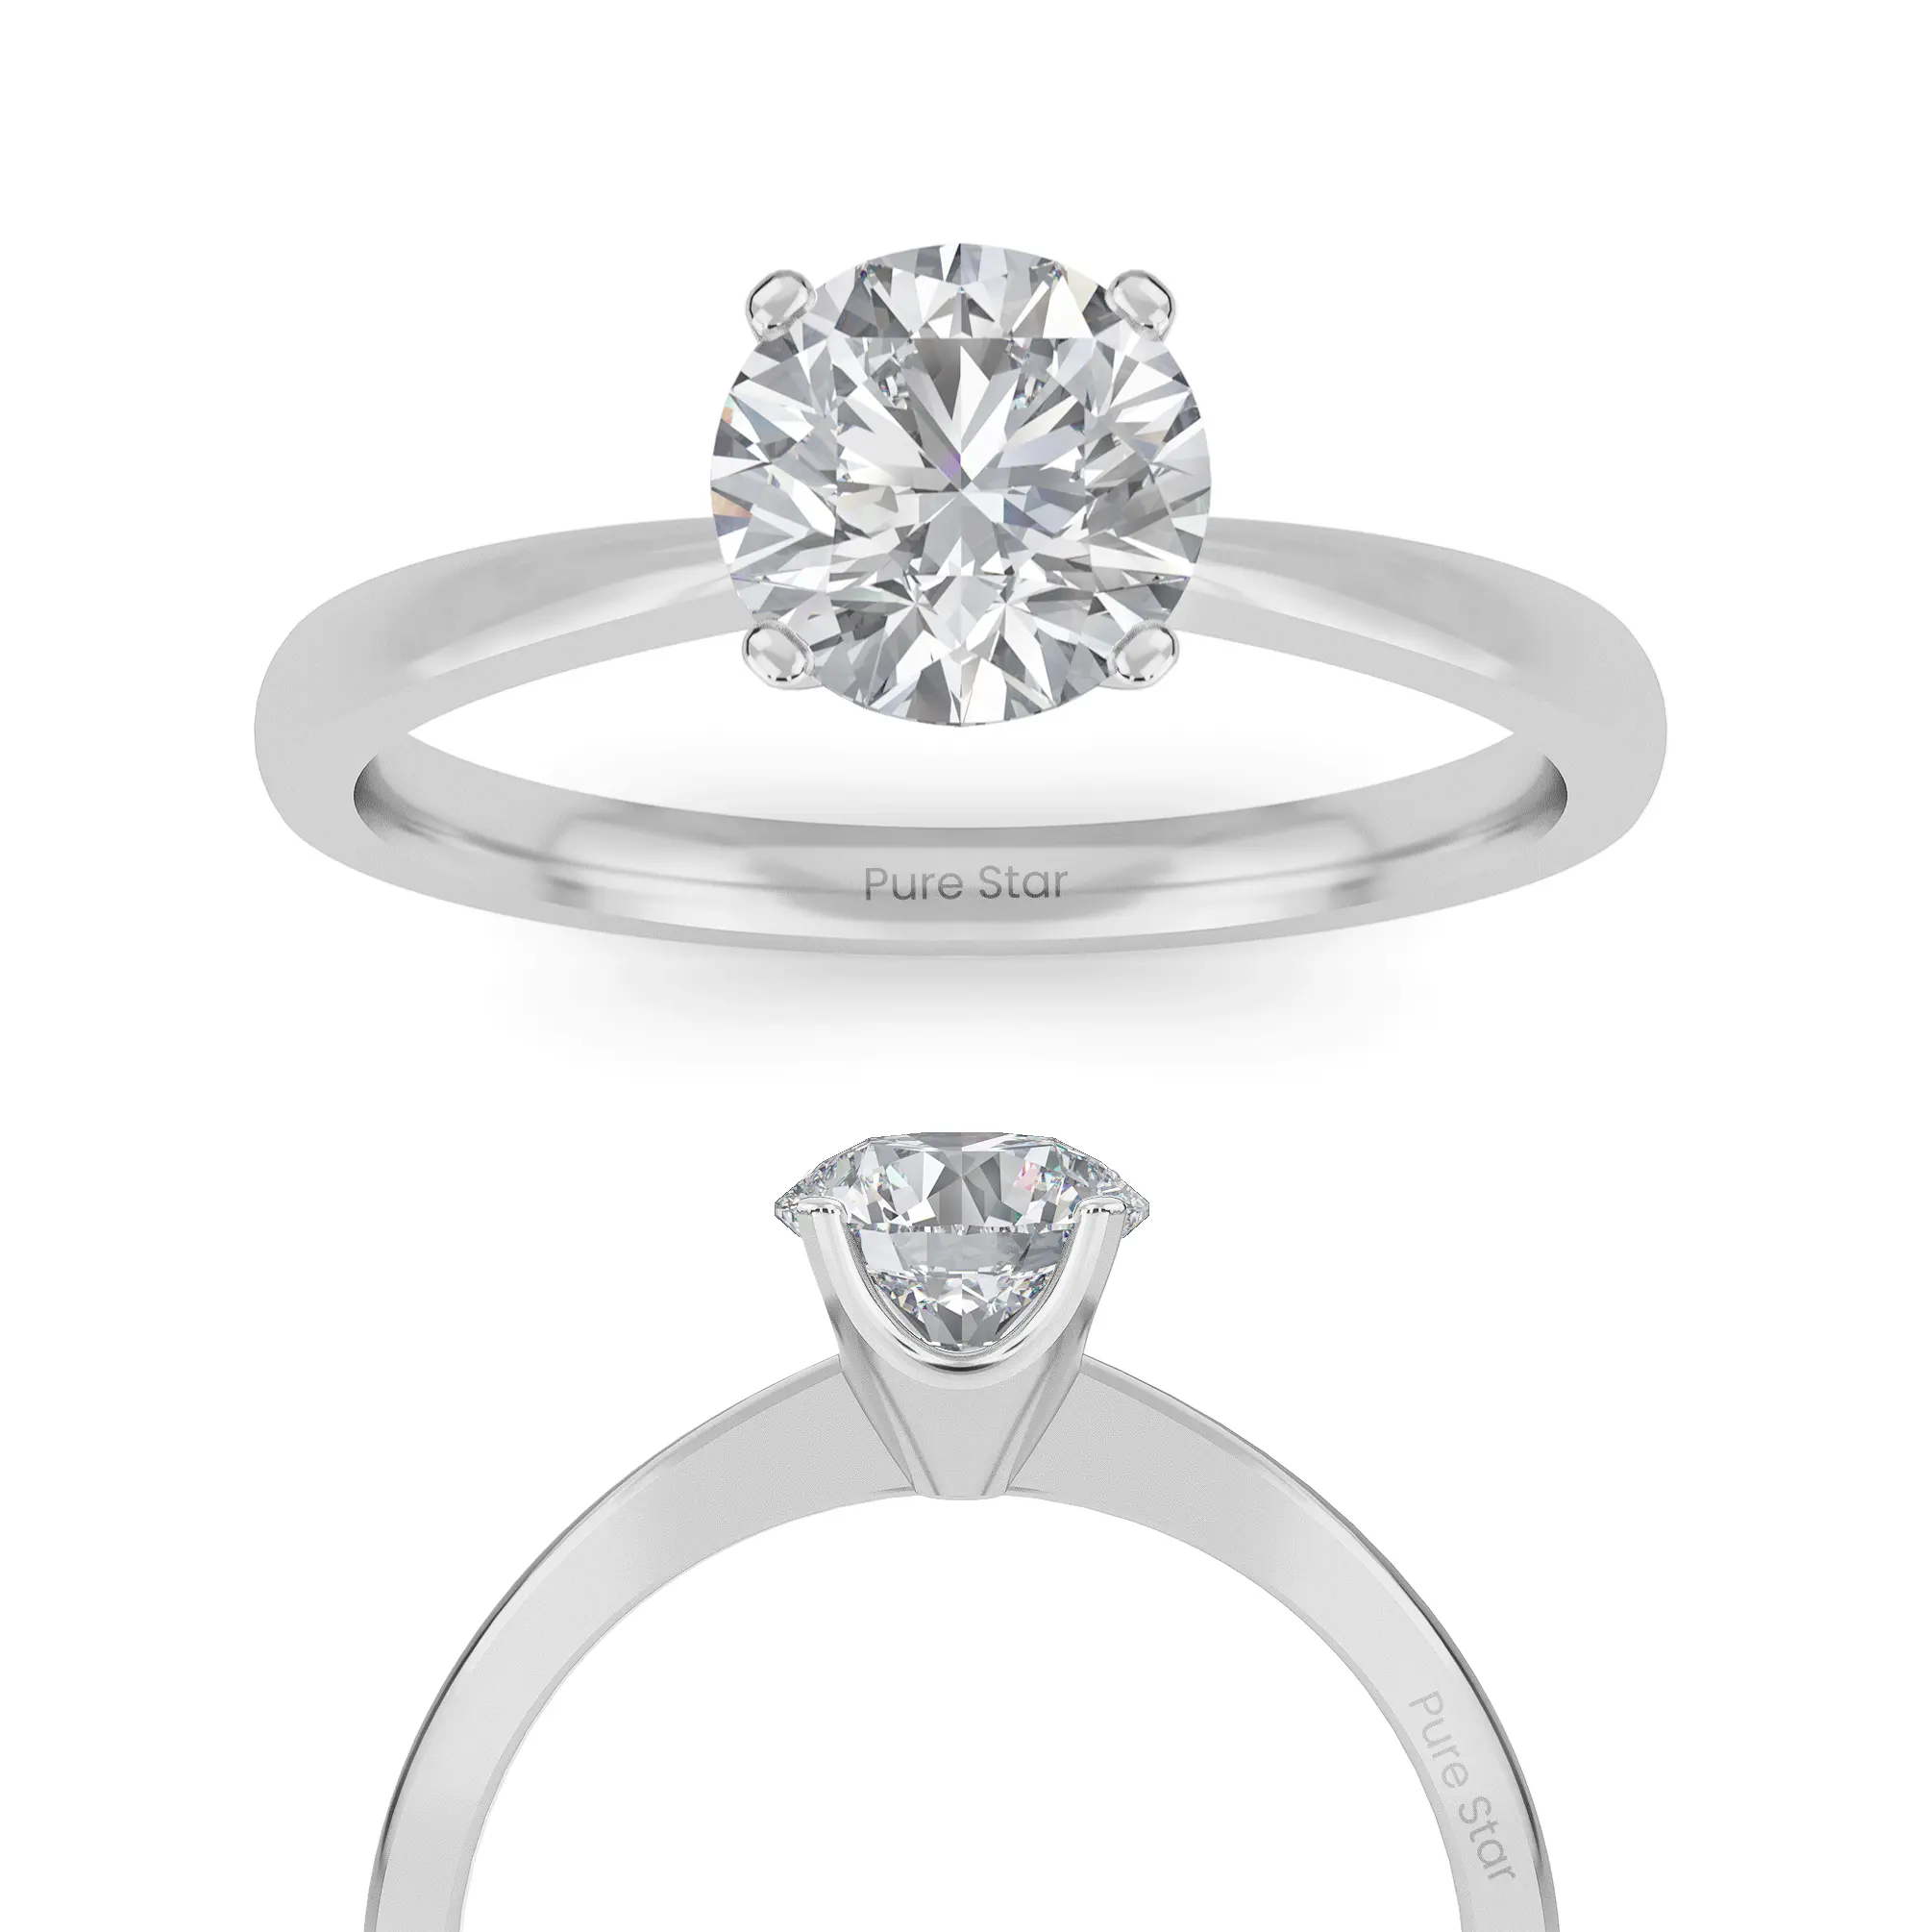 Erhöhen Sie den Moment und erkunden Sie unsere exquisite Kollektion aus 14K Massivgold Verlobungsringe mit laborierten Diamanten